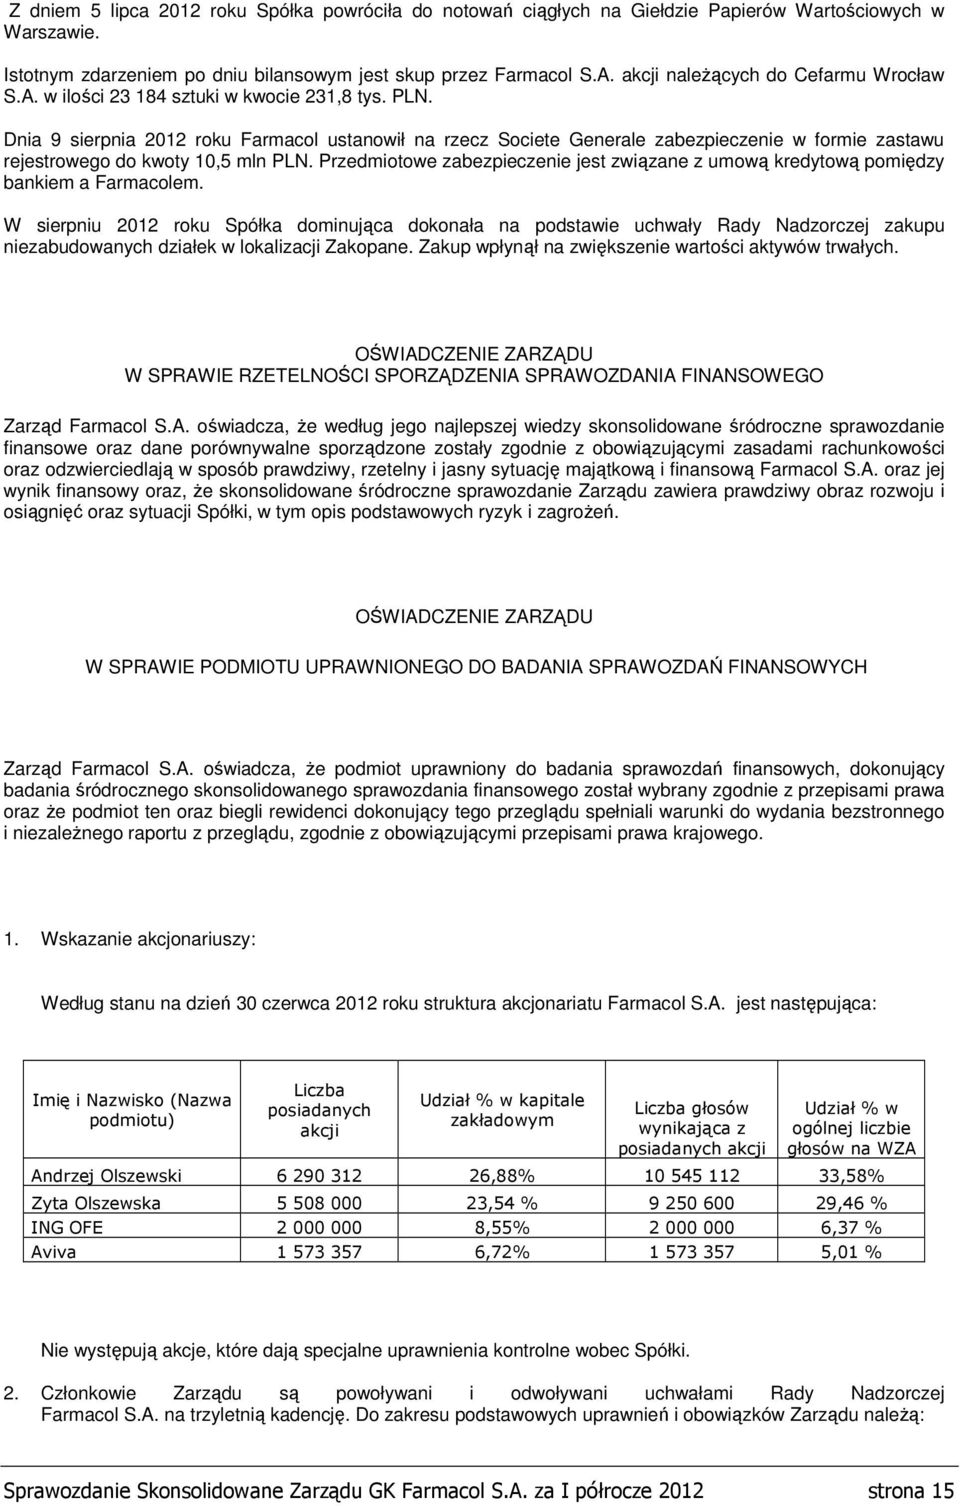 Dnia 9 sierpnia 2012 roku Farmacol ustanowił na rzecz Societe Generale zabezpieczenie w formie zastawu rejestrowego do kwoty 10,5 mln PLN.